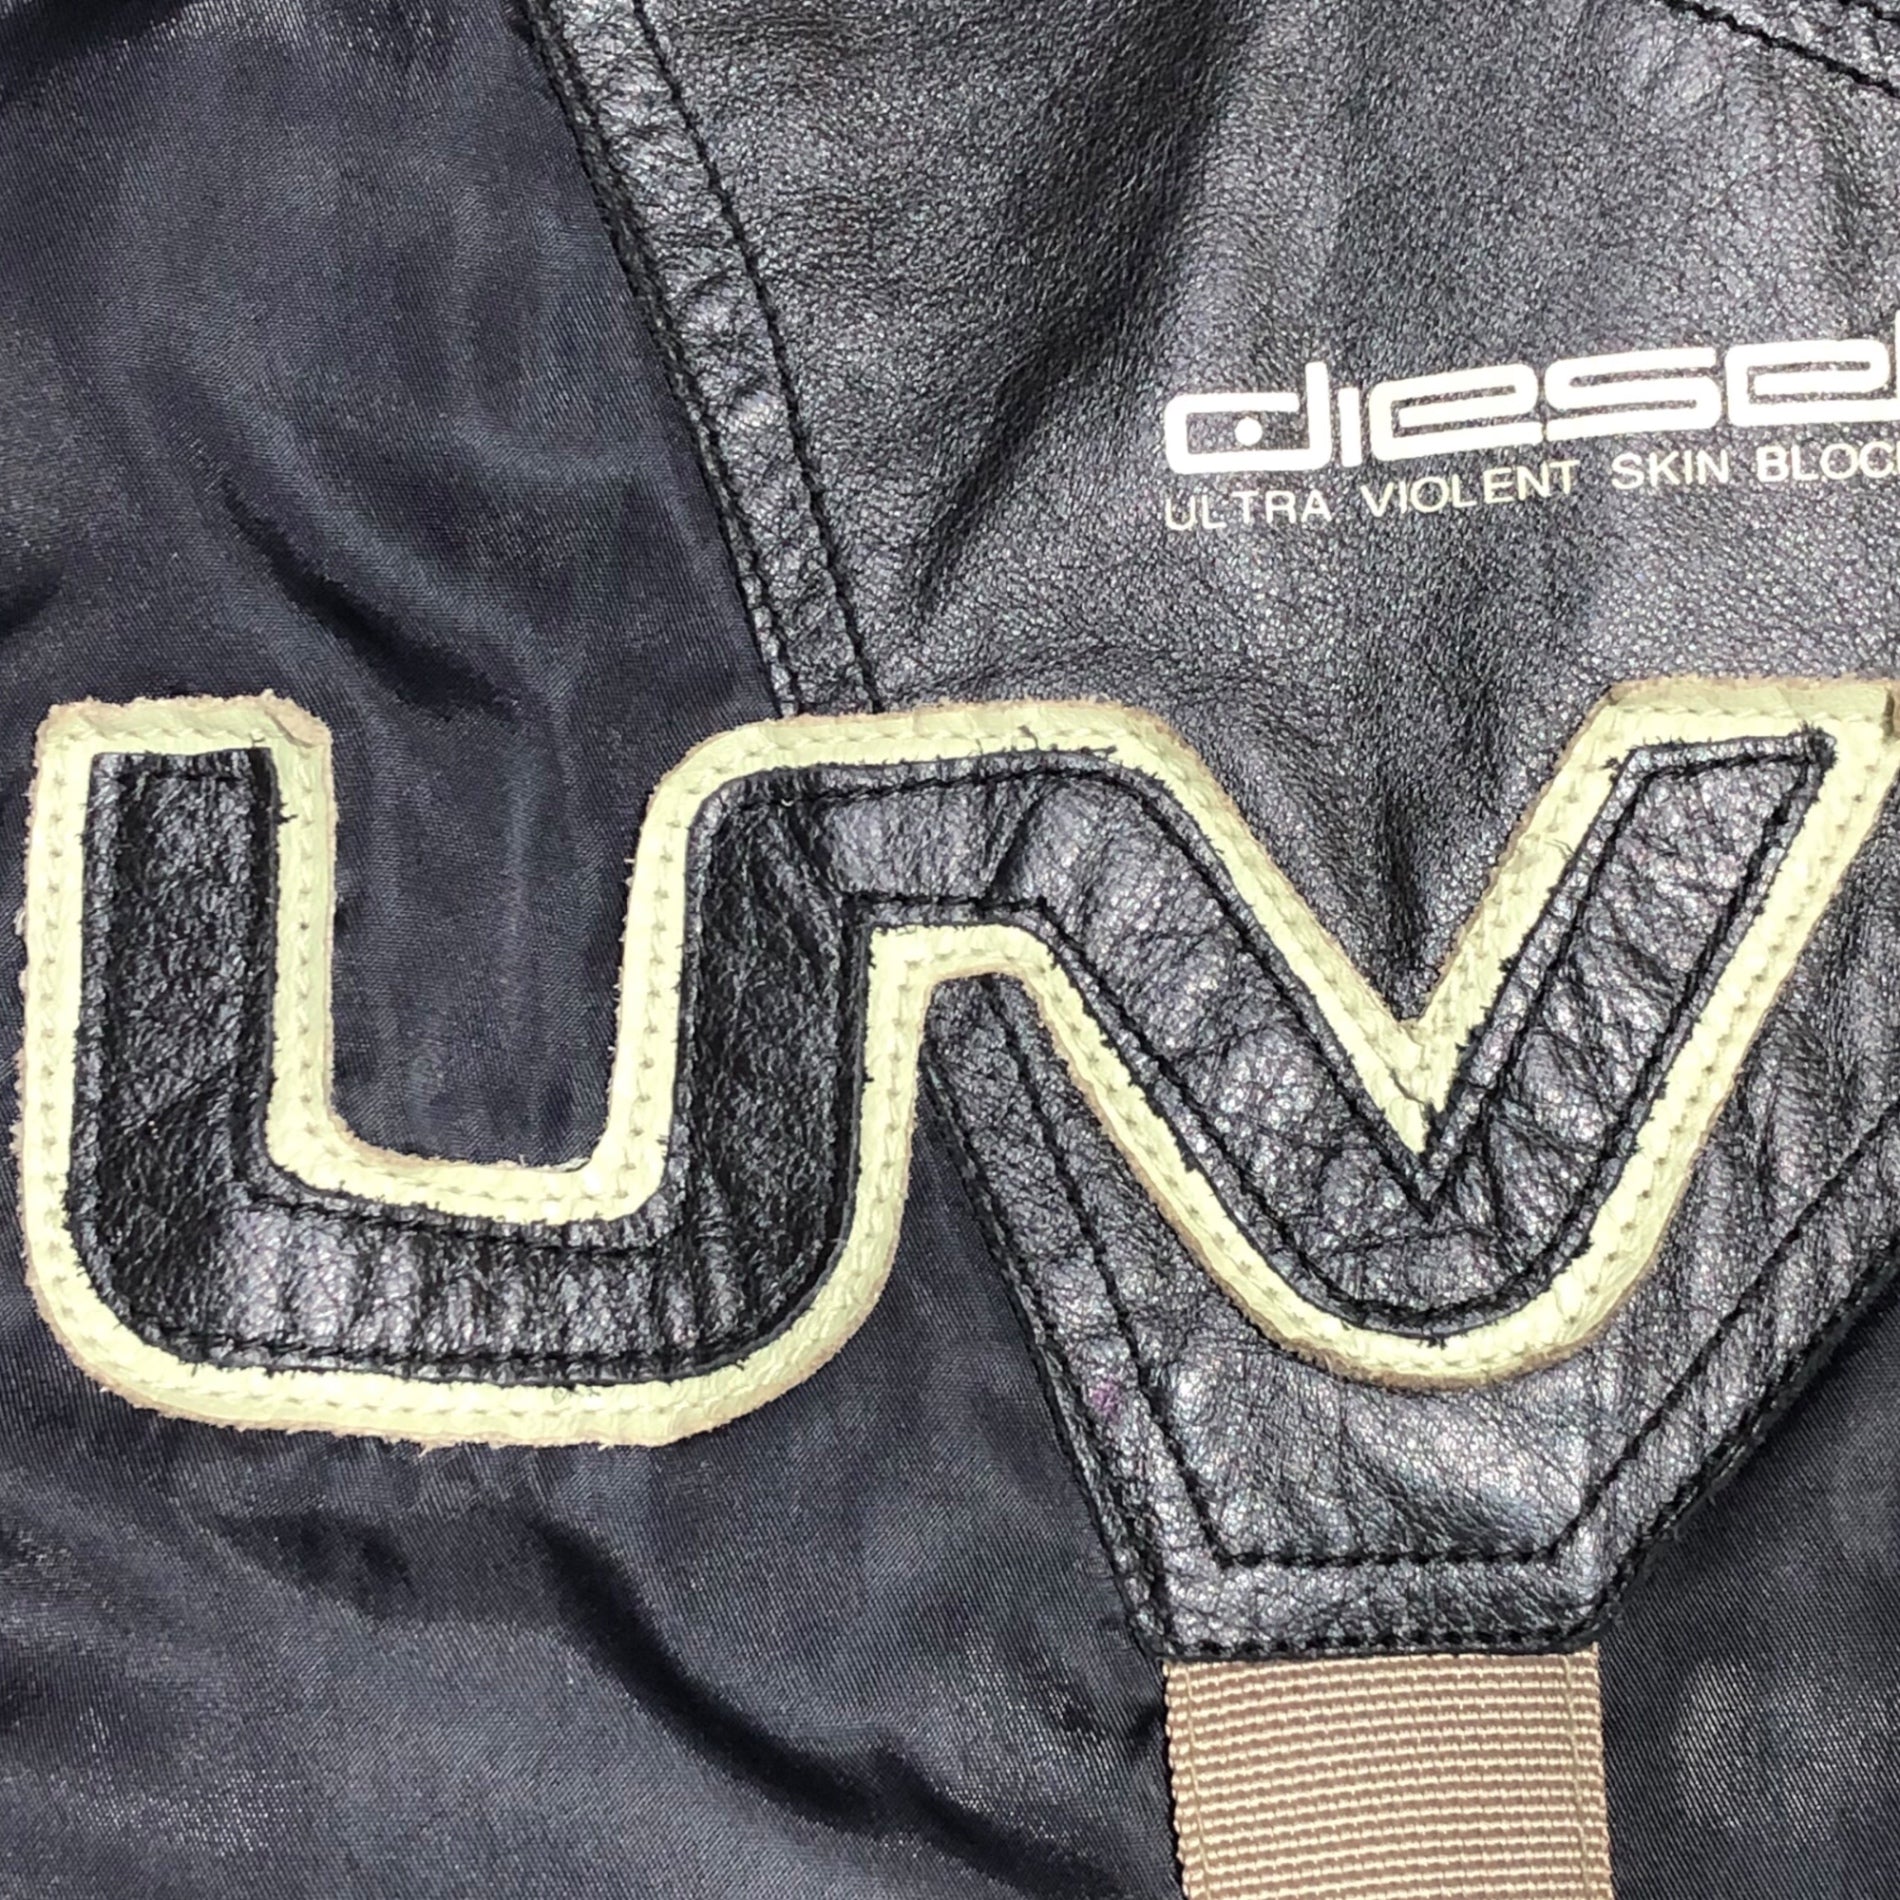 DIESEL(ディーゼル) 90's Leather switching nylon biker jacket レザー切替 ナイロン バイカー ジャケット 90年代 archives アーカイヴ M ブラック×ベージュ ULRTA VIOLENT SKIN BLOCK